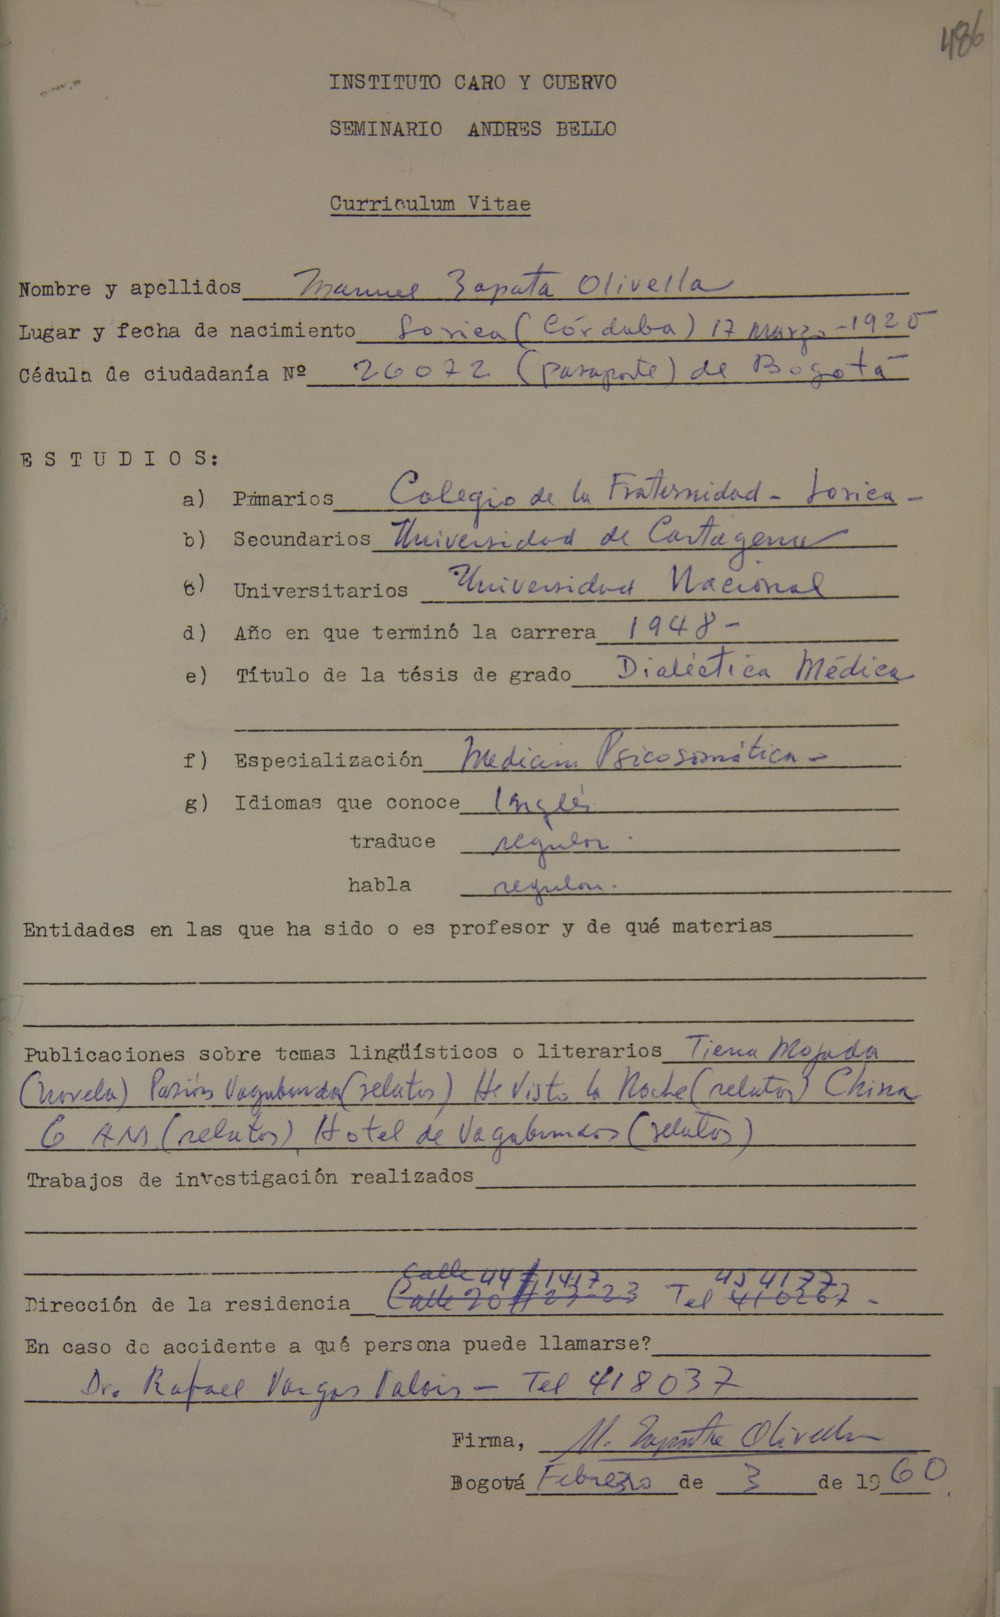 Curriculum vitae de Manuel Zapata Olivella.